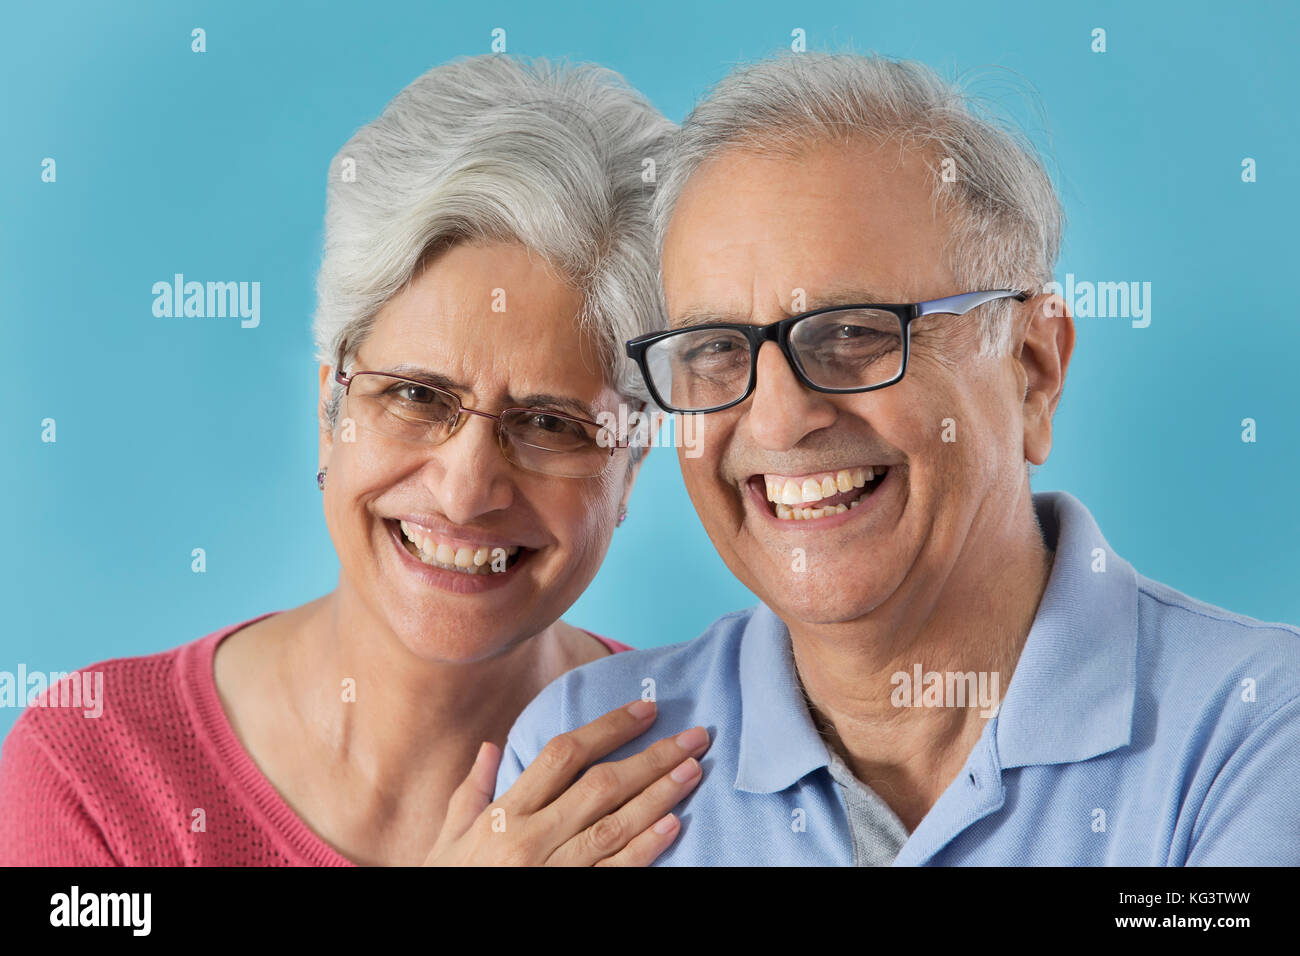 Portrait of happy old couple Stock Photo